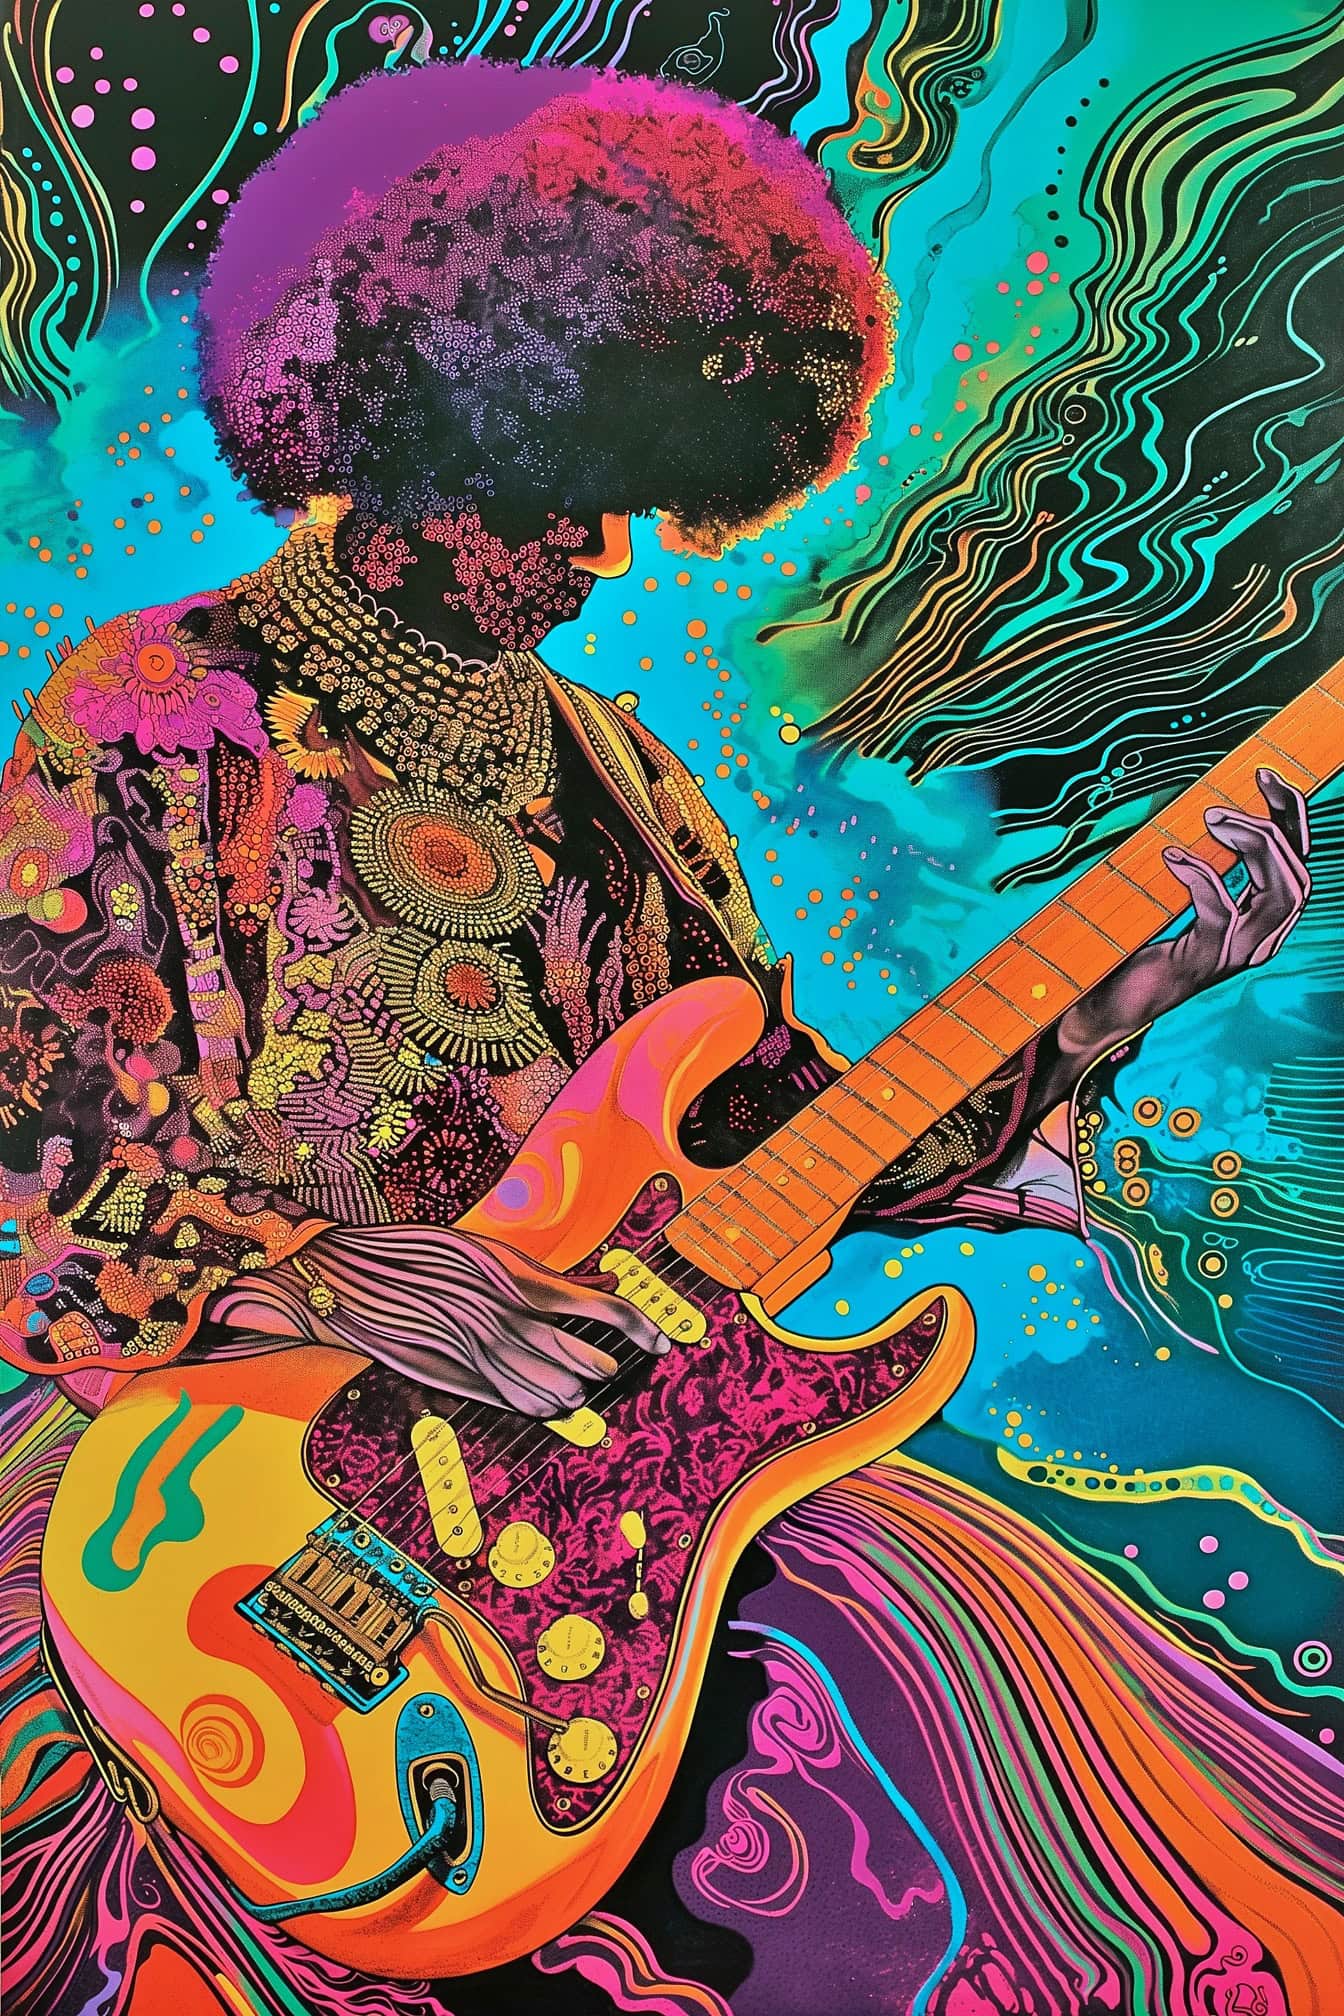 Một minh họa thôi miên của Jimi Hendrix chơi guitar trong sự pha trộn giữa phong cách nghệ thuật ảo giác và pop